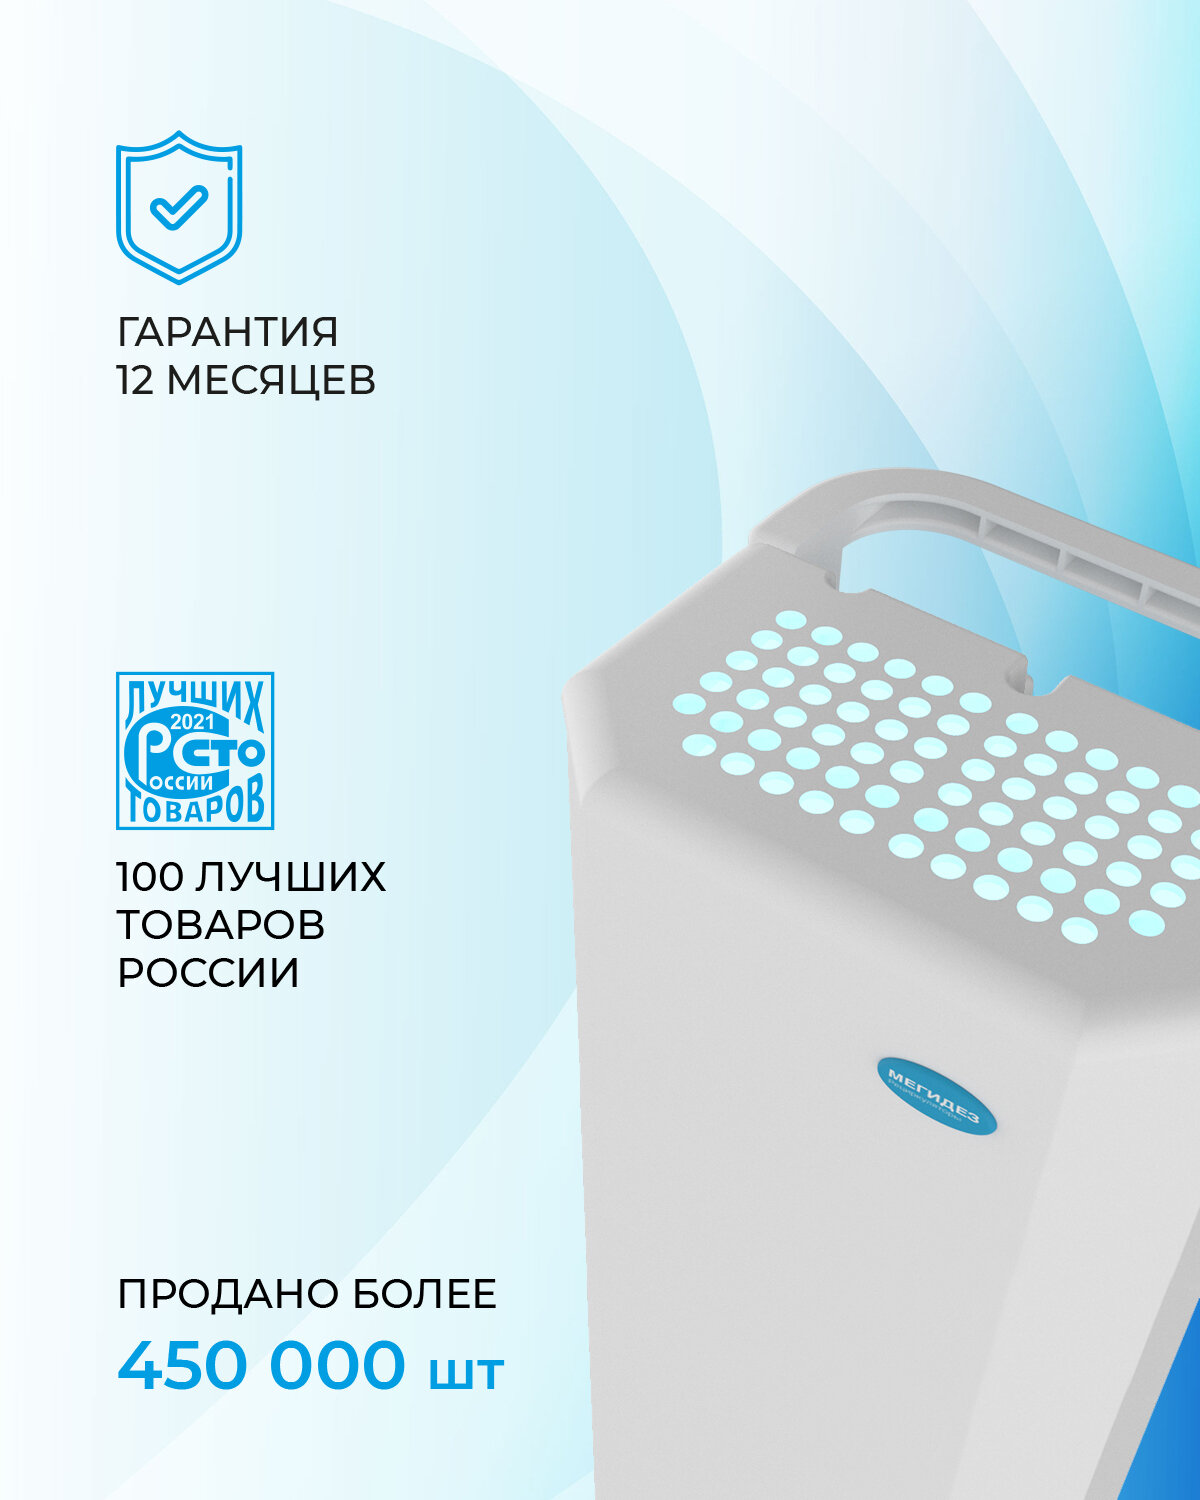 Рециркулятор облучатель воздуха бактерицидный для дома, для офиса мегидез 910.3 (1 лампа по 30 вт, передвижной, есть Сертификат Соответствия и Рег. удостоверение)